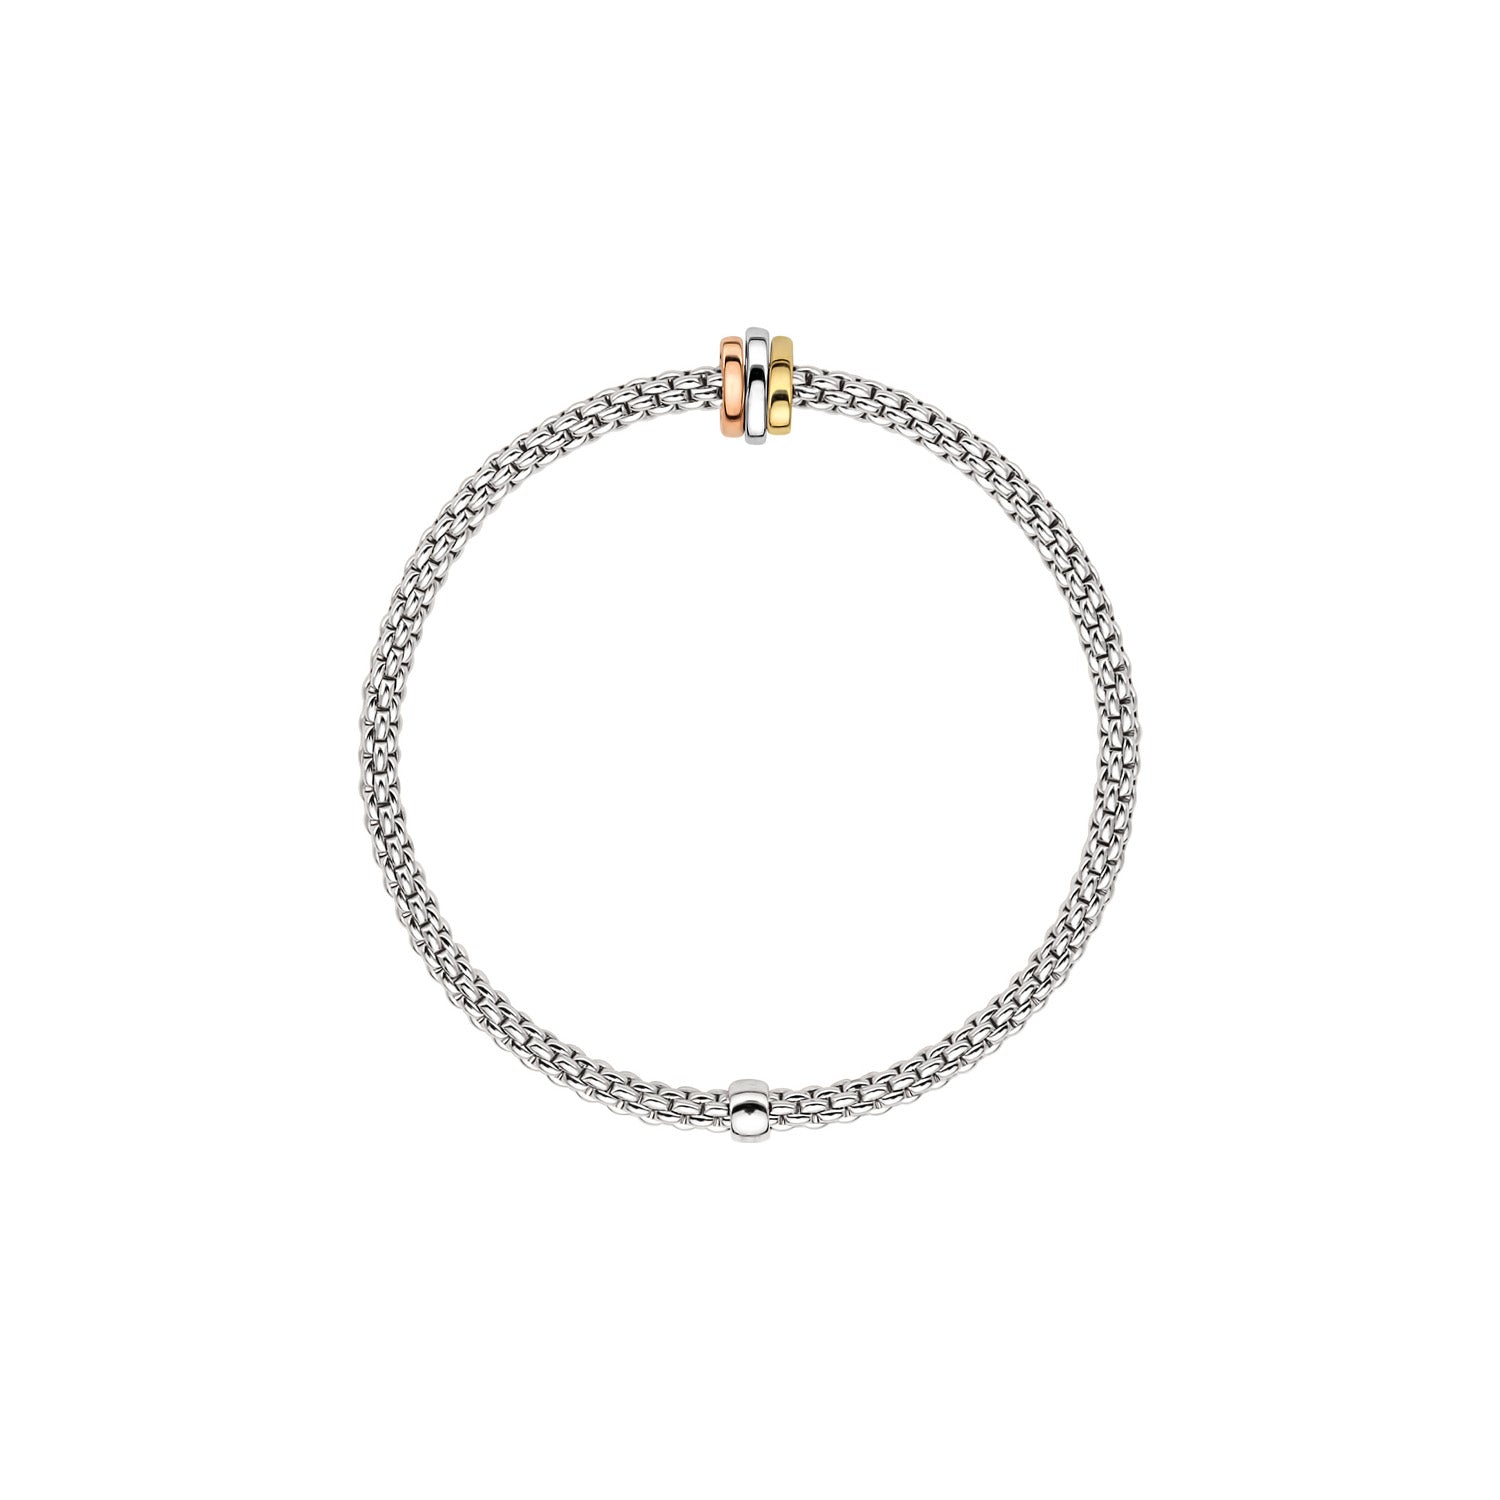 Flex'it Prima bracelet in white gold